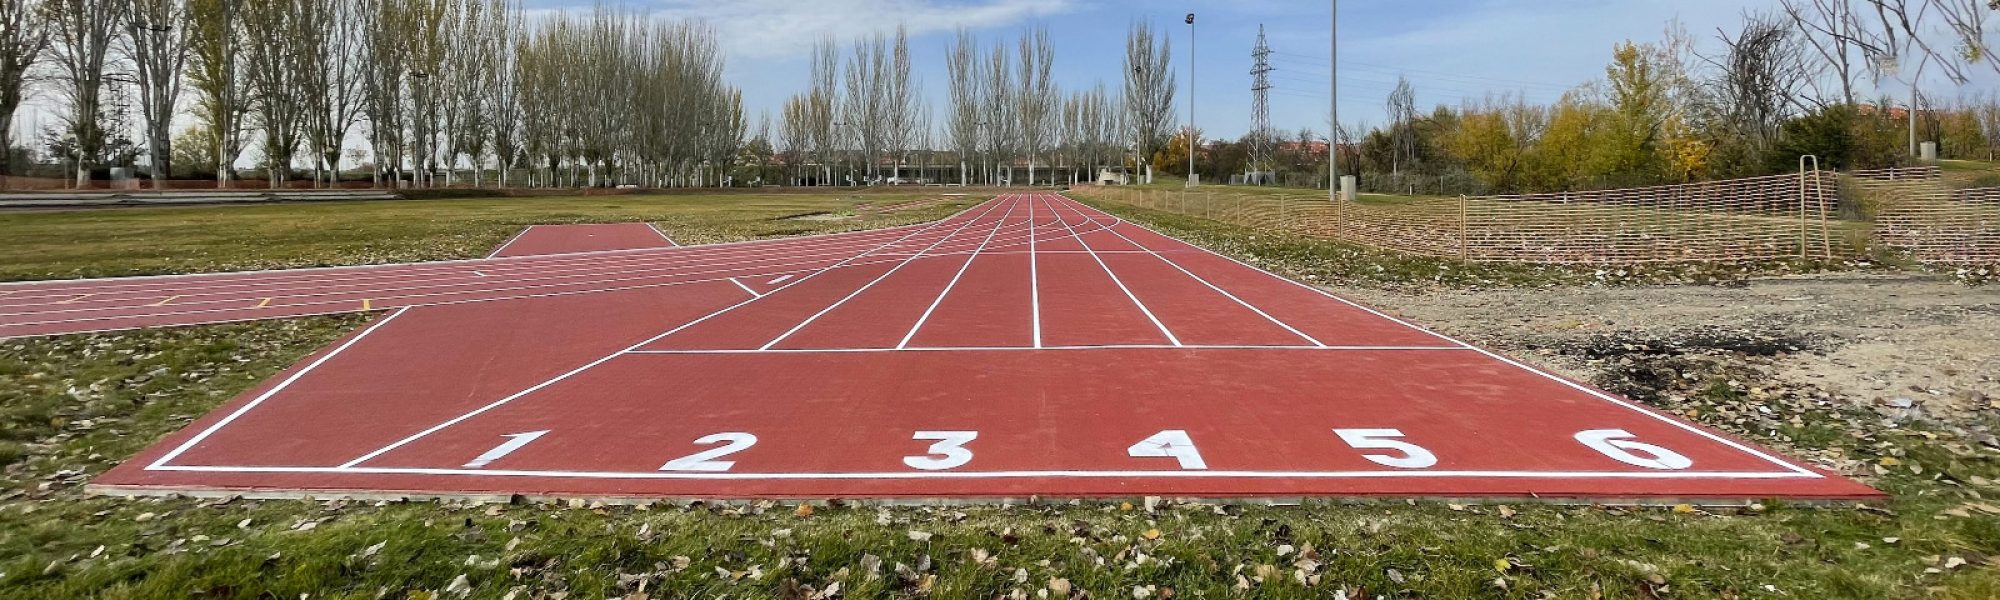 Pista de atletismo del Complejo Deportivo Salas Bajas de la Universidad de Salamanca, equipado con pavimento Sportflex Super X 720 de Mondo